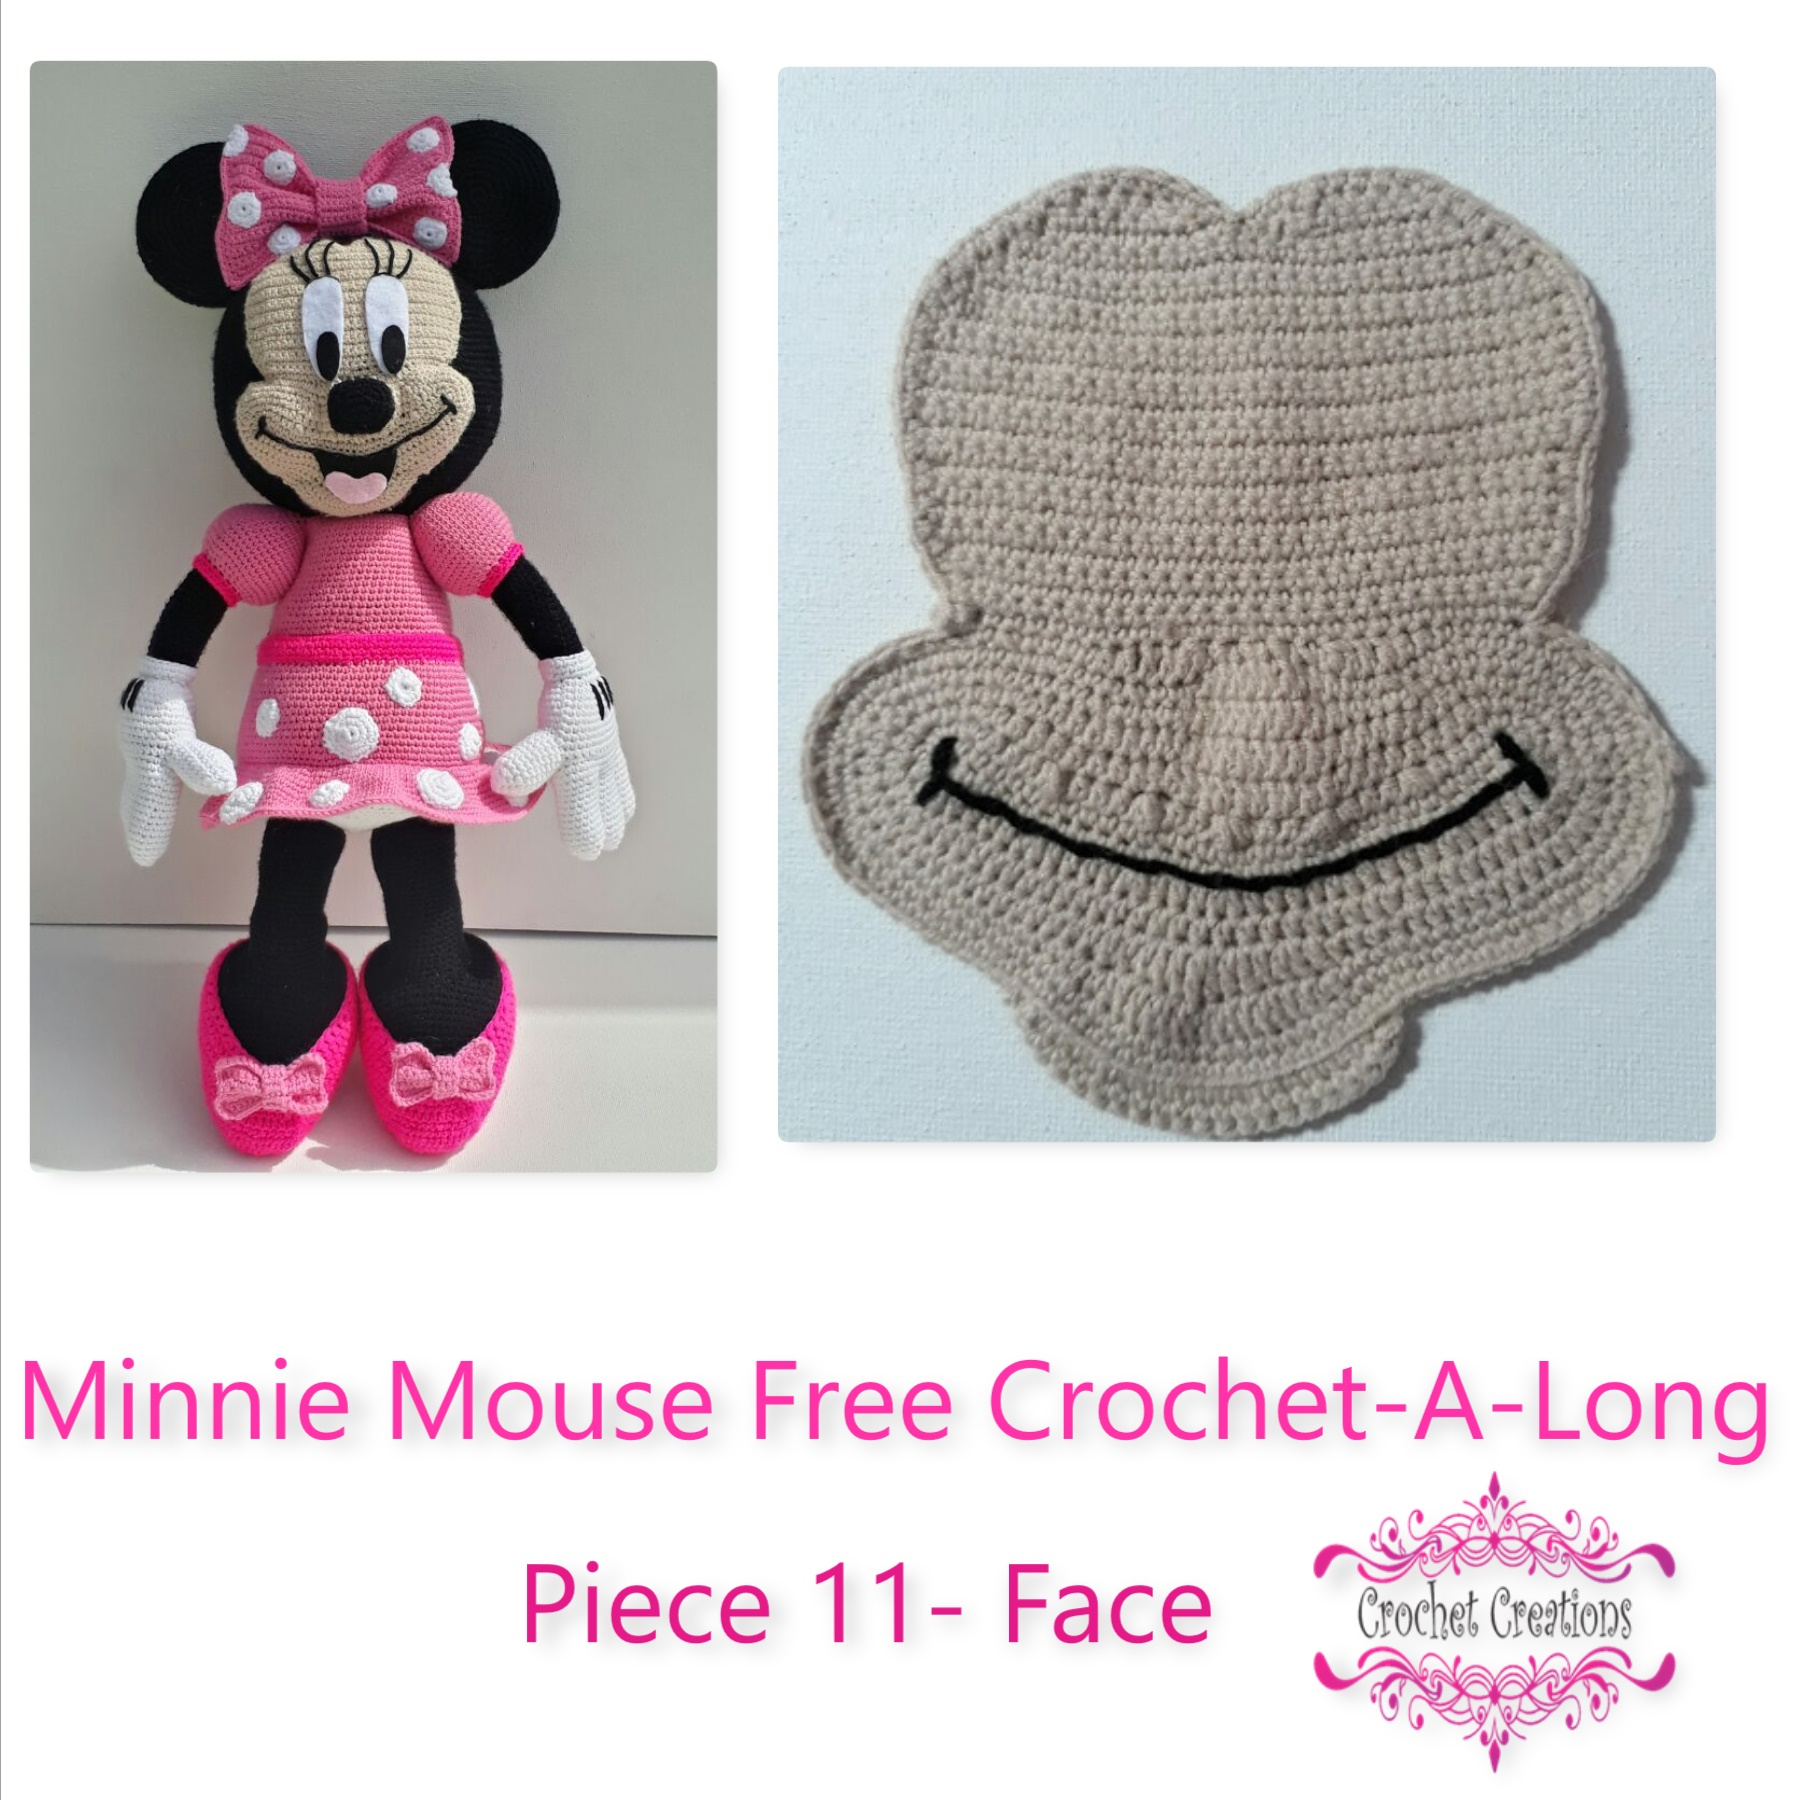 Free Crochet Minnie Mouse Doll Pattern Minnie Mouse Free Crochet A Long Piece 11 Face Crochet Creations